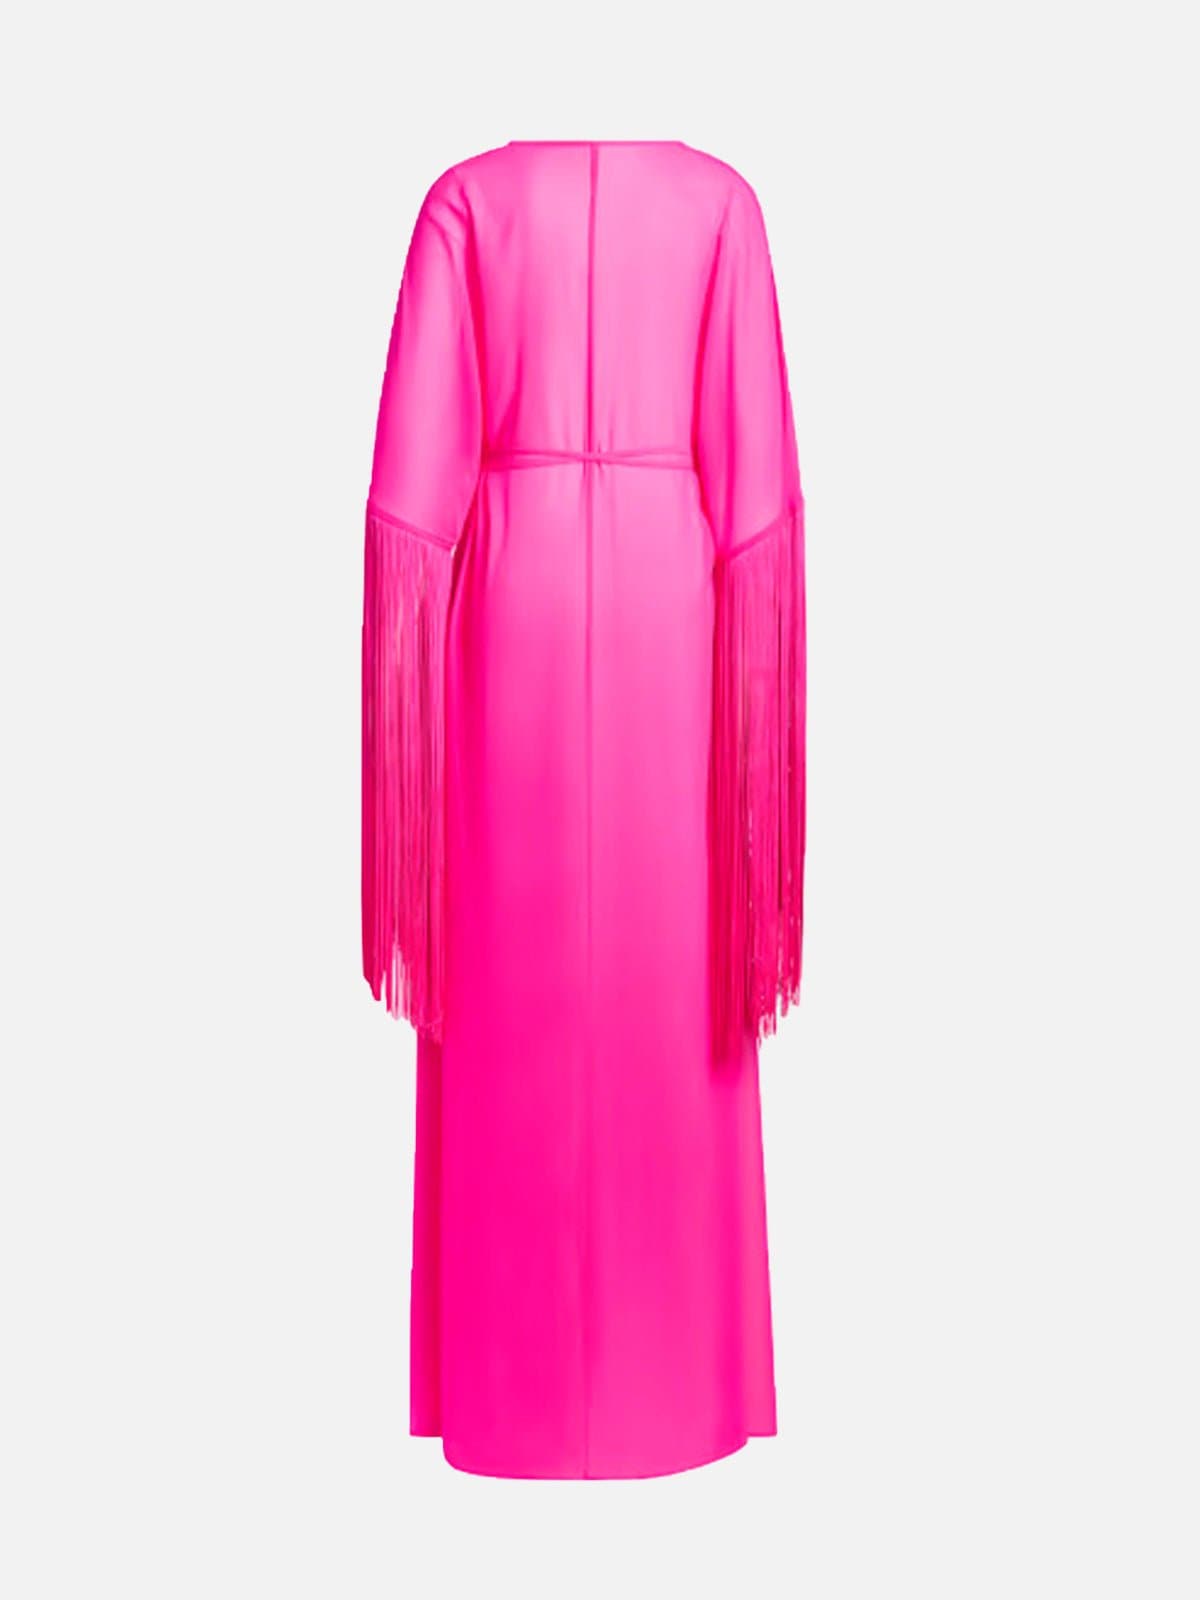 Ivy Park Fringe Robe 'Shock Pink' | ELBİSE shopi go